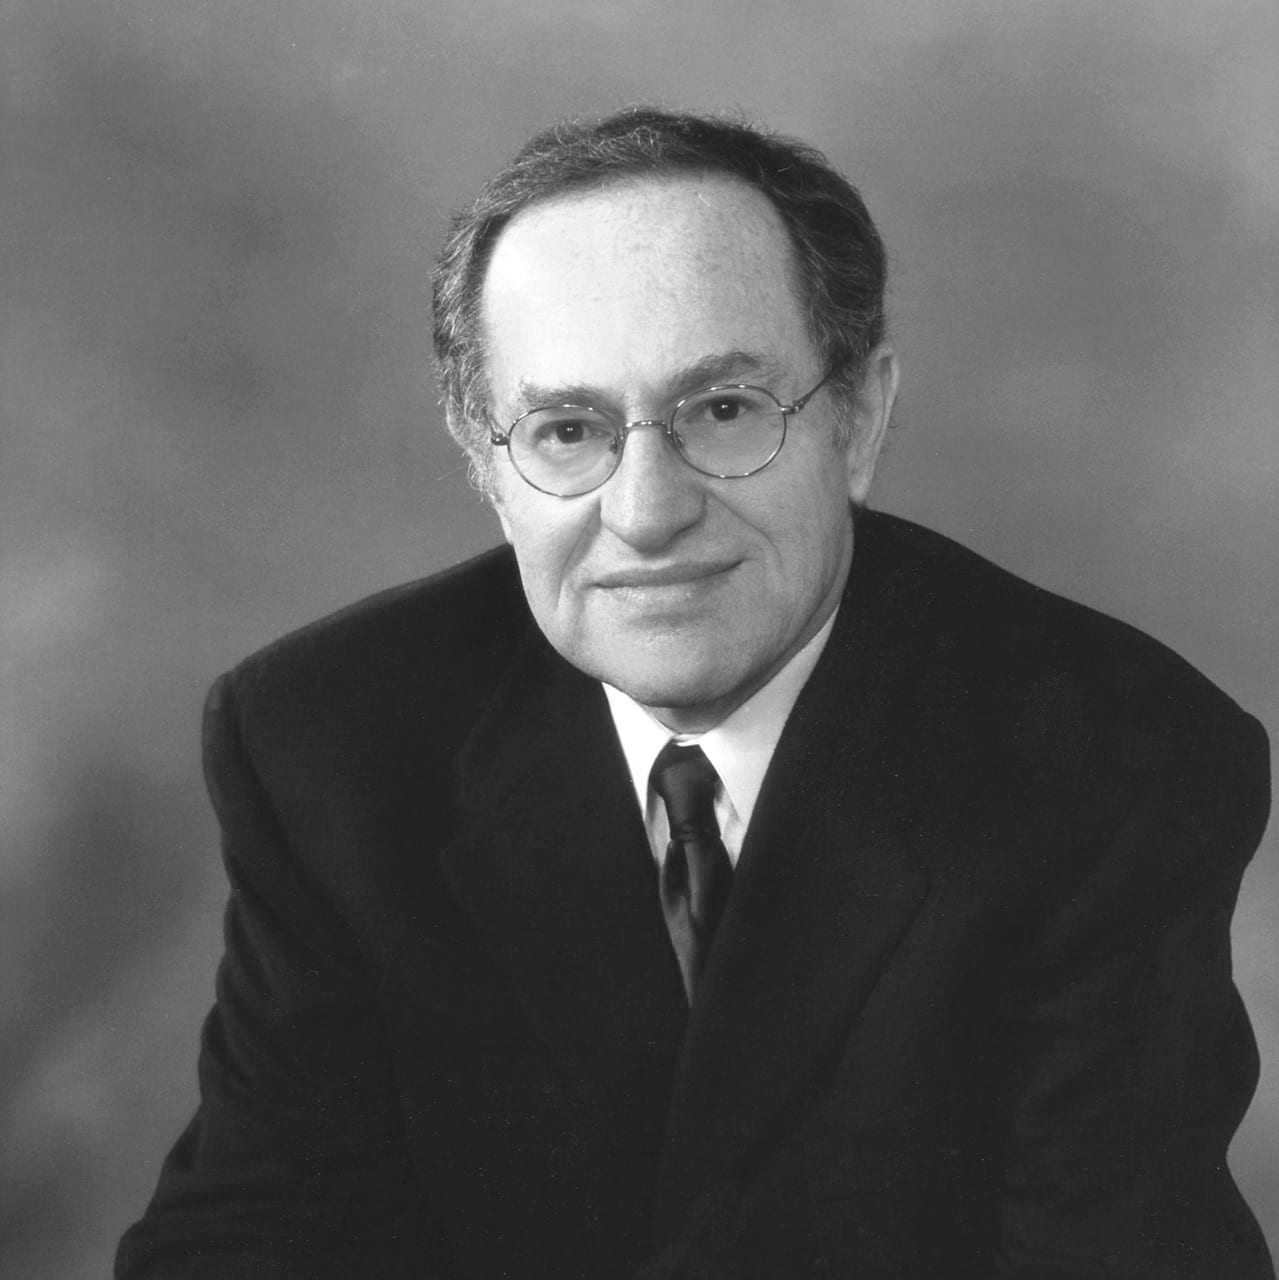 PROFESSOR ALAN DERSHOWITZ